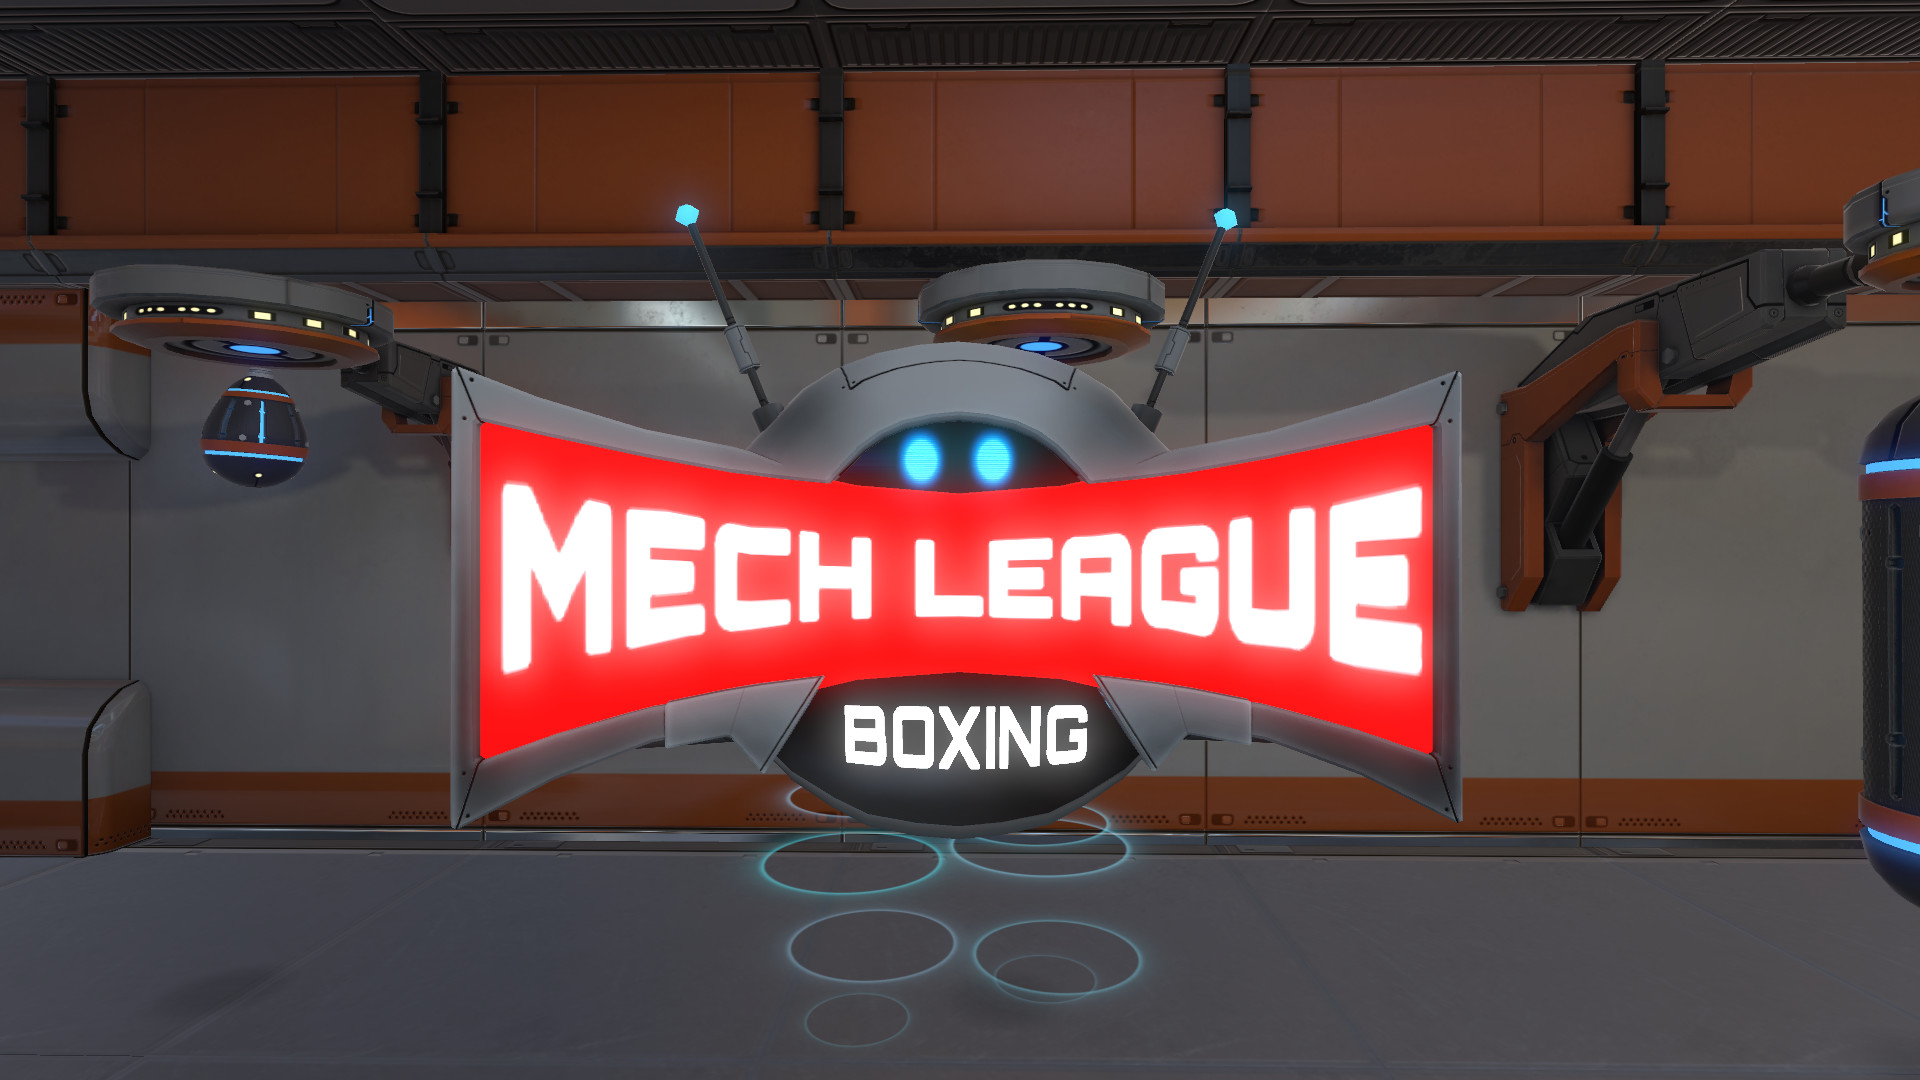 Mech League Boxing screenshot